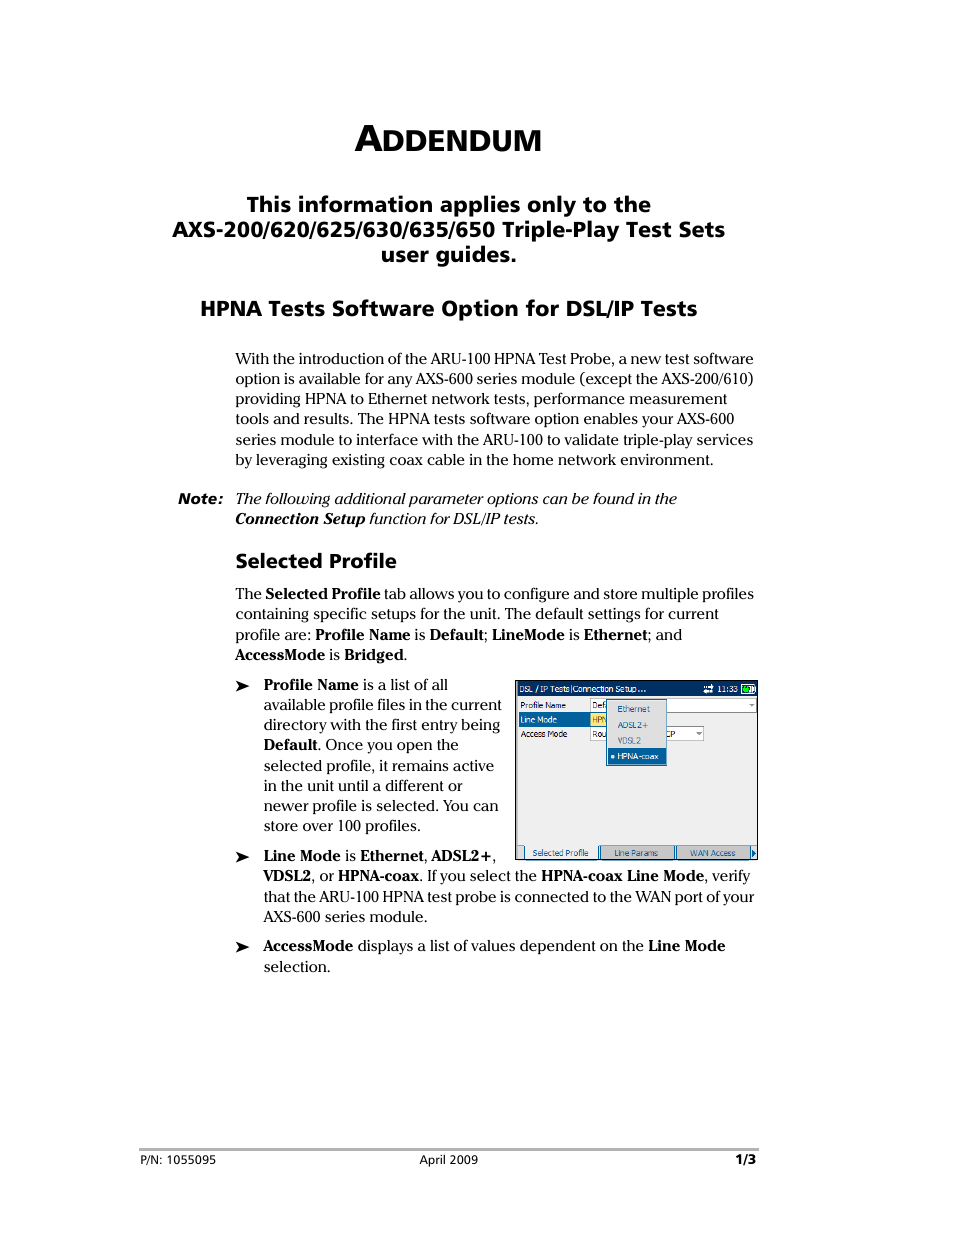 ARU-100 HPNA Test Software Option for DSL/IP Tests